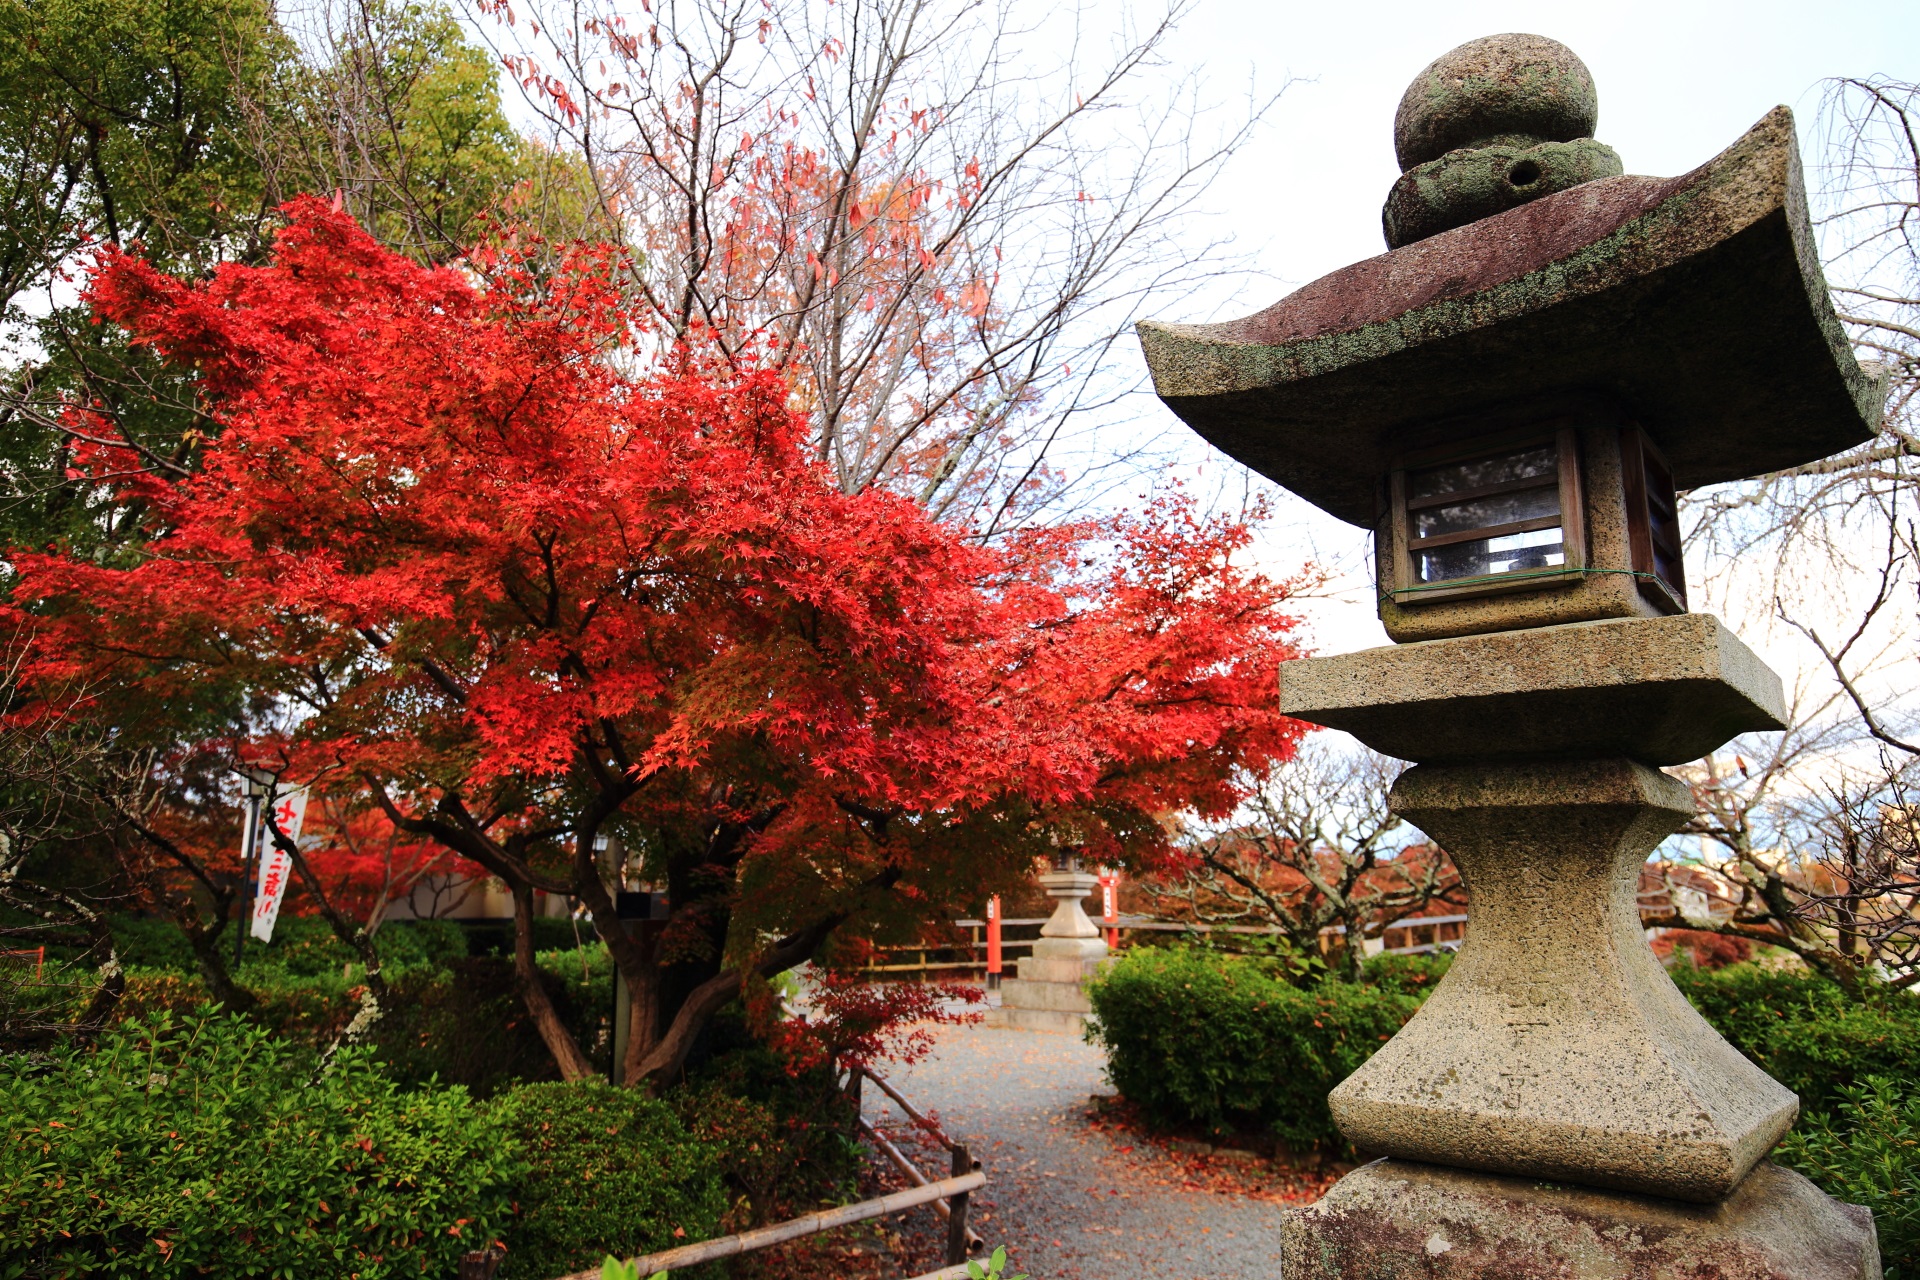 長岡天満宮の燈籠と紅葉の絵になる秋の風景